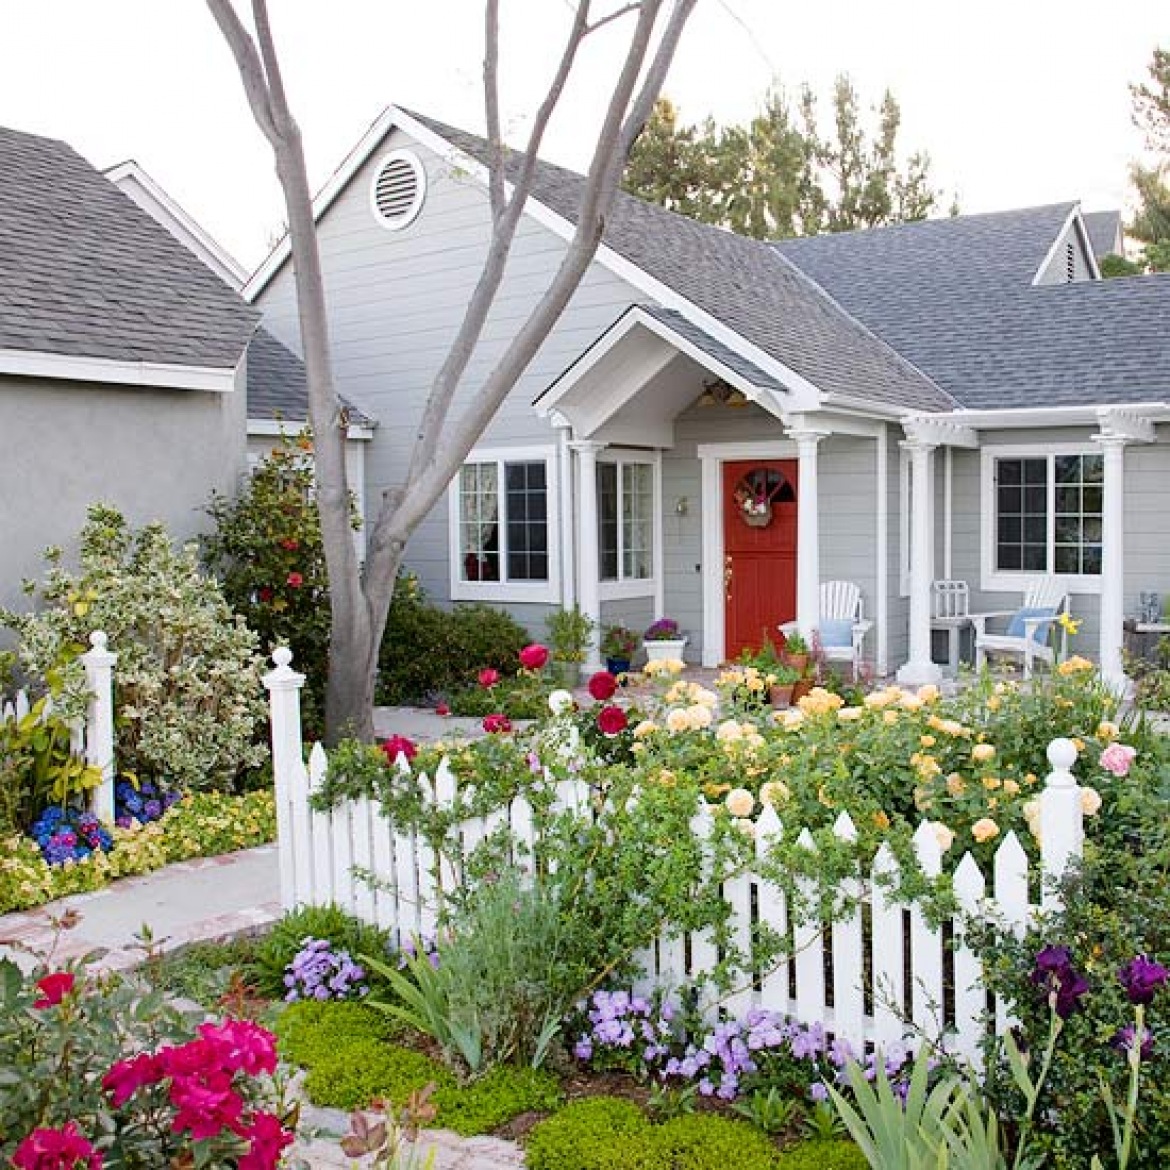 Красивые цветы возле дома. Цветник перед домом. Красивый палисадник. Красивый цветник перед домом. Палисадн к перед домрм.